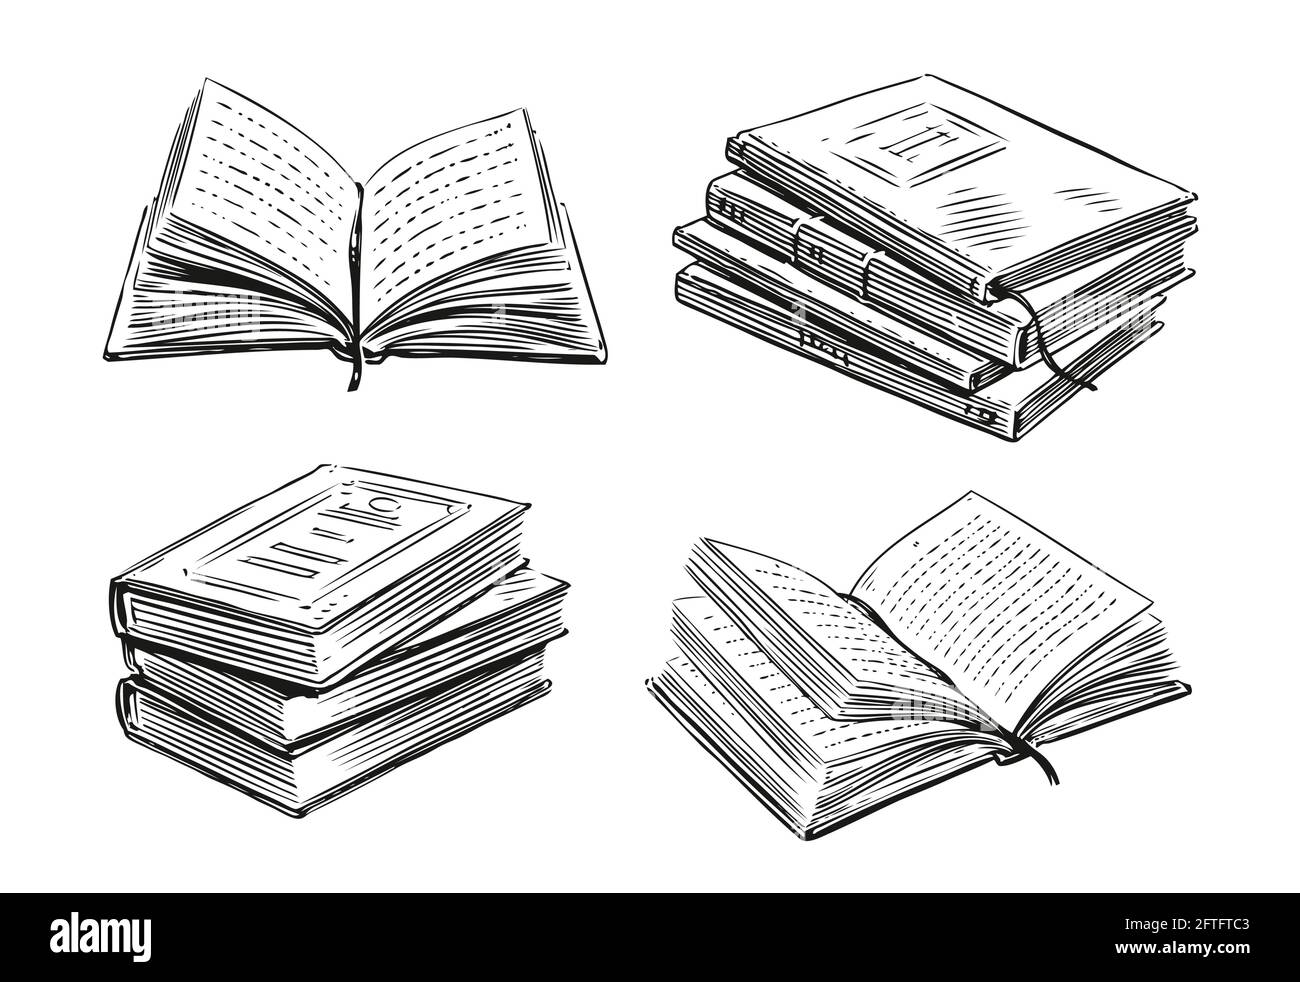 Collection de livres. École, concept d'étude. Illustration vectorielle dessinée à la main dans un style d'esquisse Illustration de Vecteur